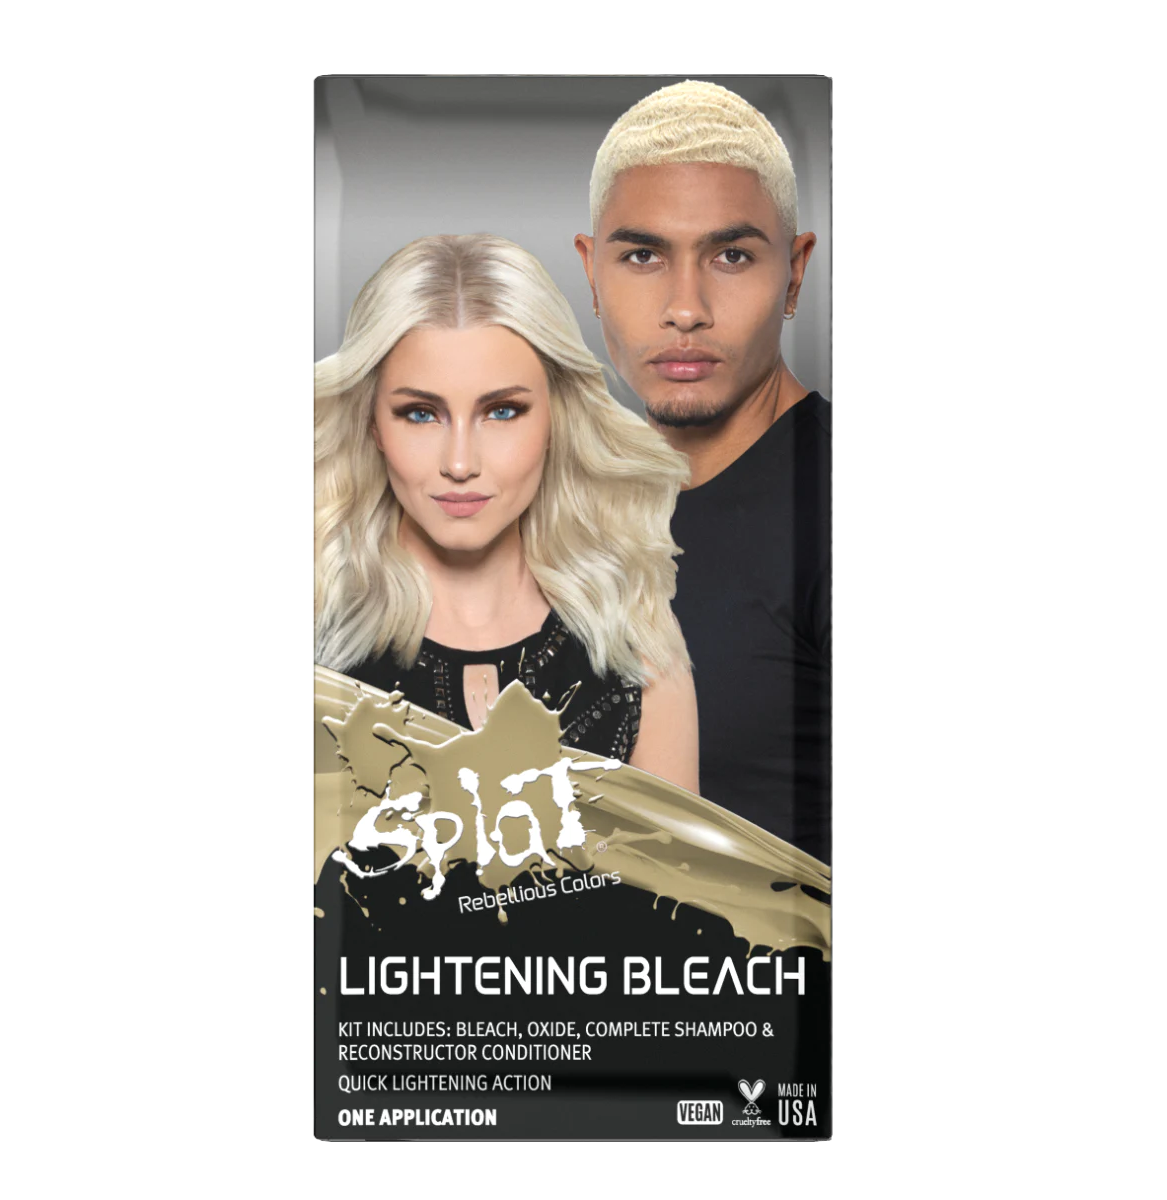 Lightening Bleach: Original Hair Bleach Complete Kit